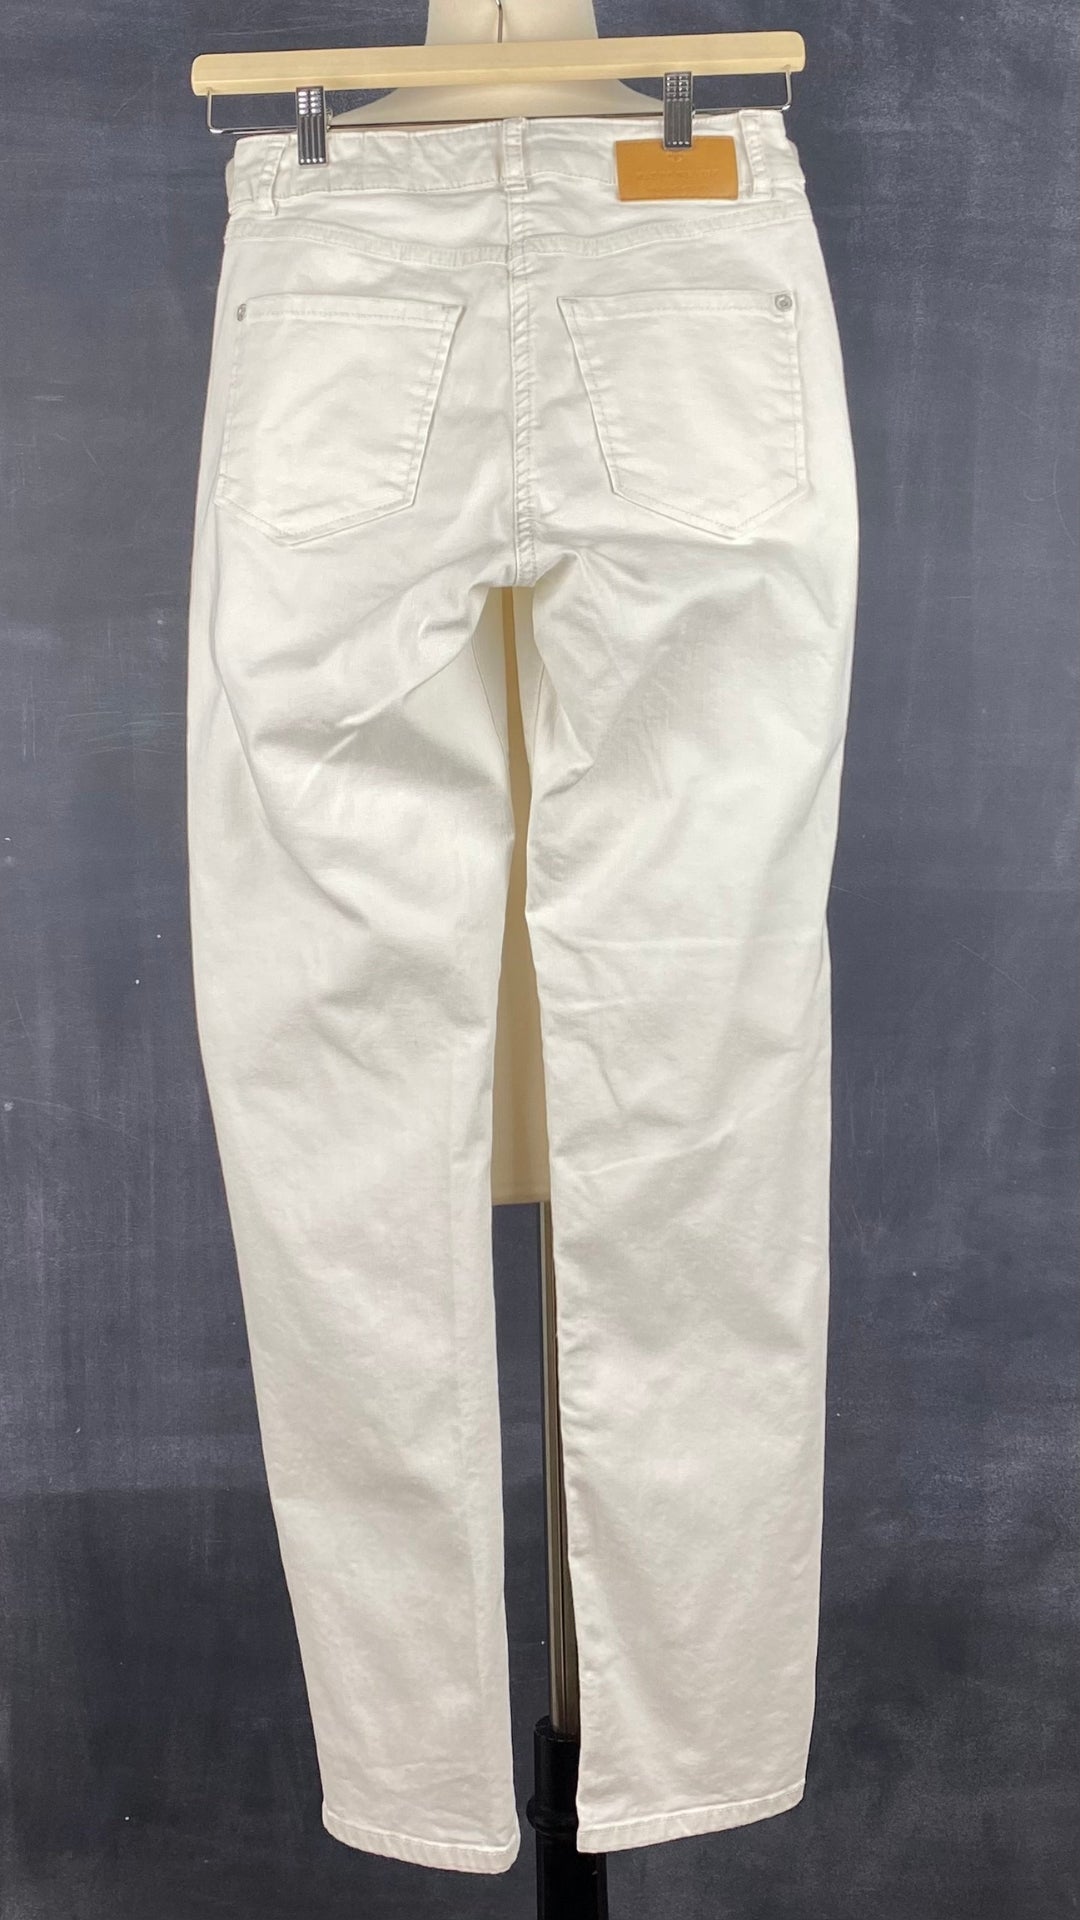 Pantalon crème à jambe droite poches plaquées, Mat de Misaine, taille 34 (xs). Vue de dos.